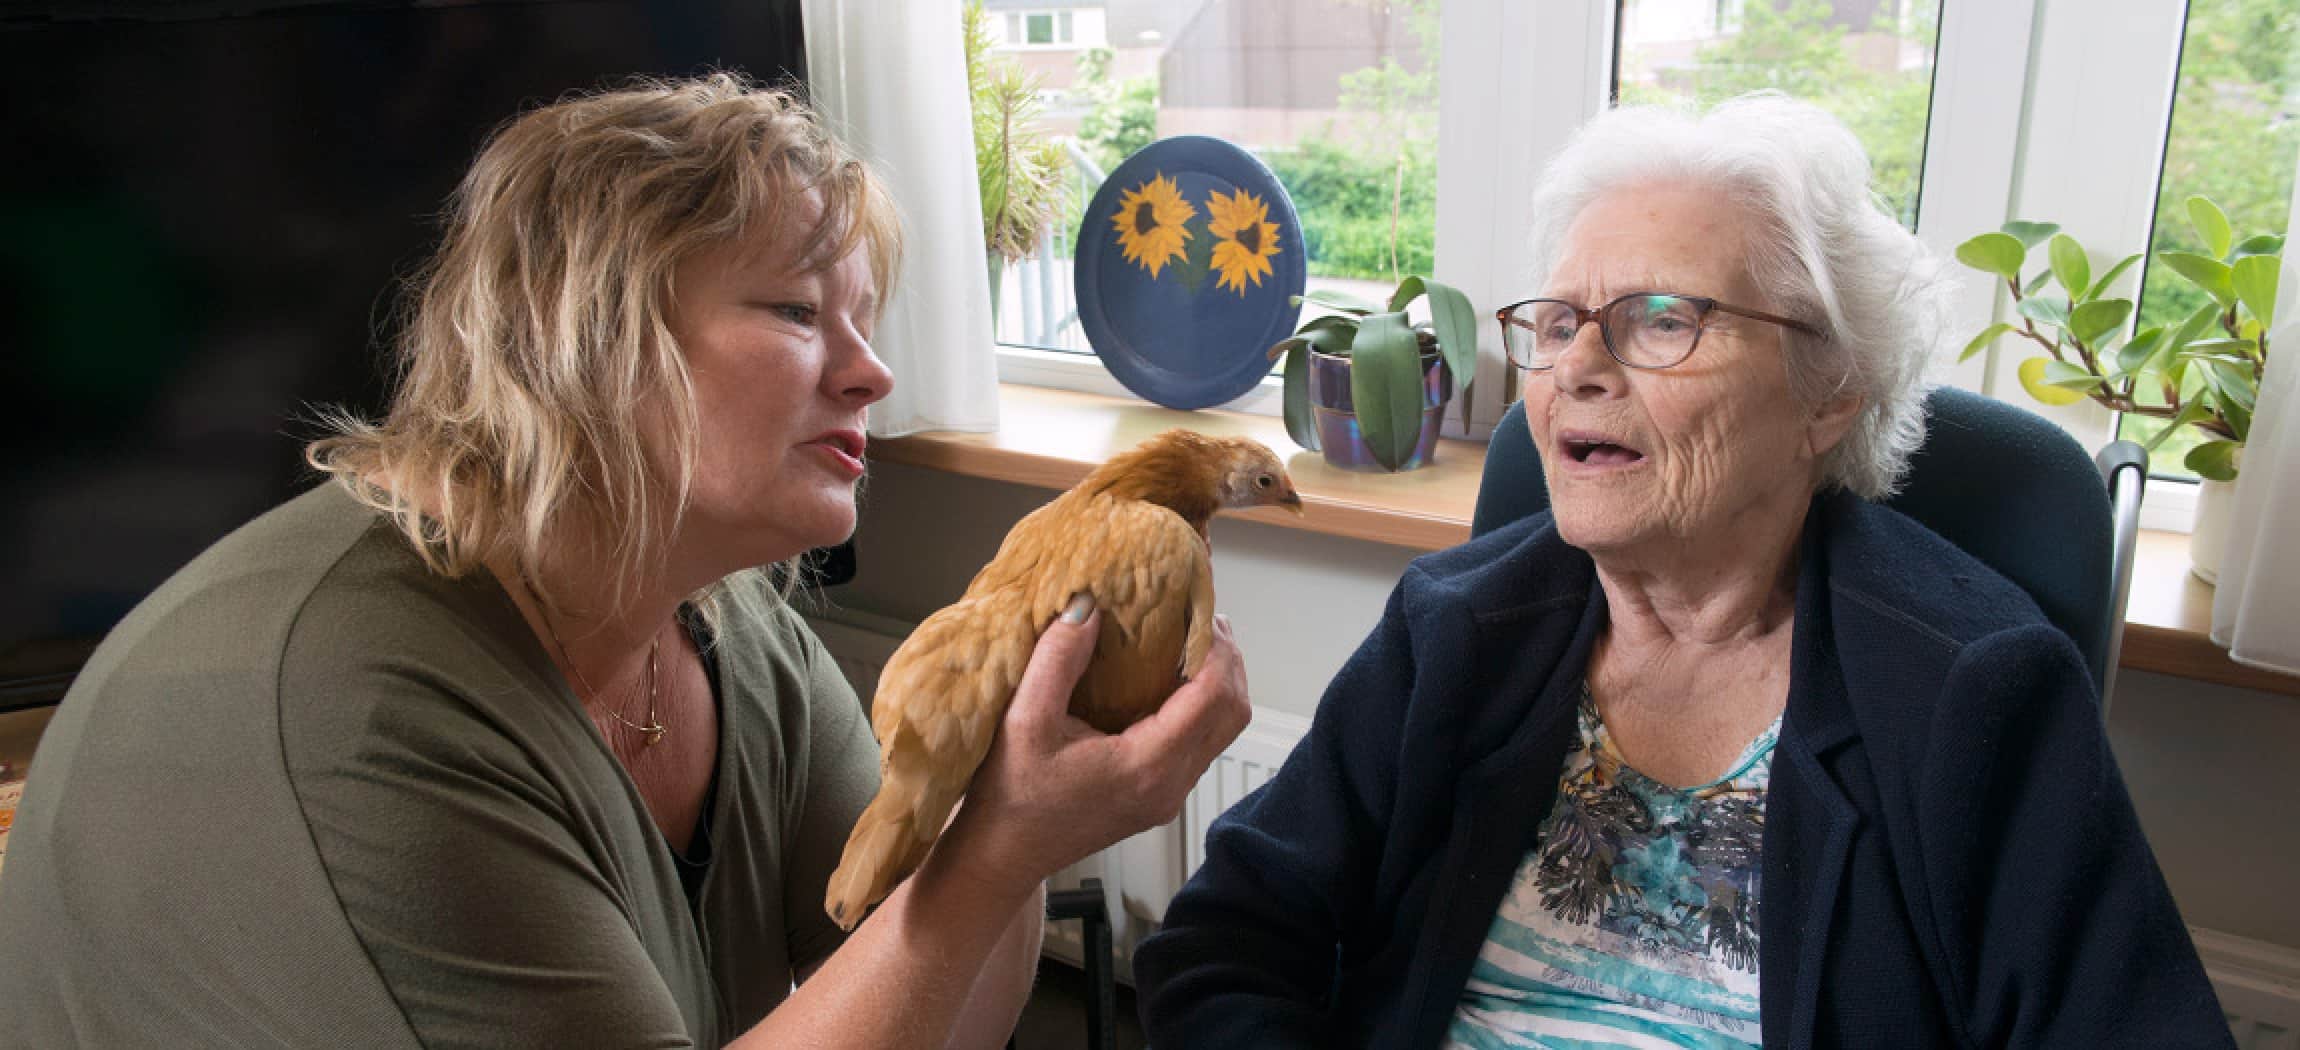 Oudere vrouw kijkt naar kipje tijdens dierenbezoek in verpleeghuis